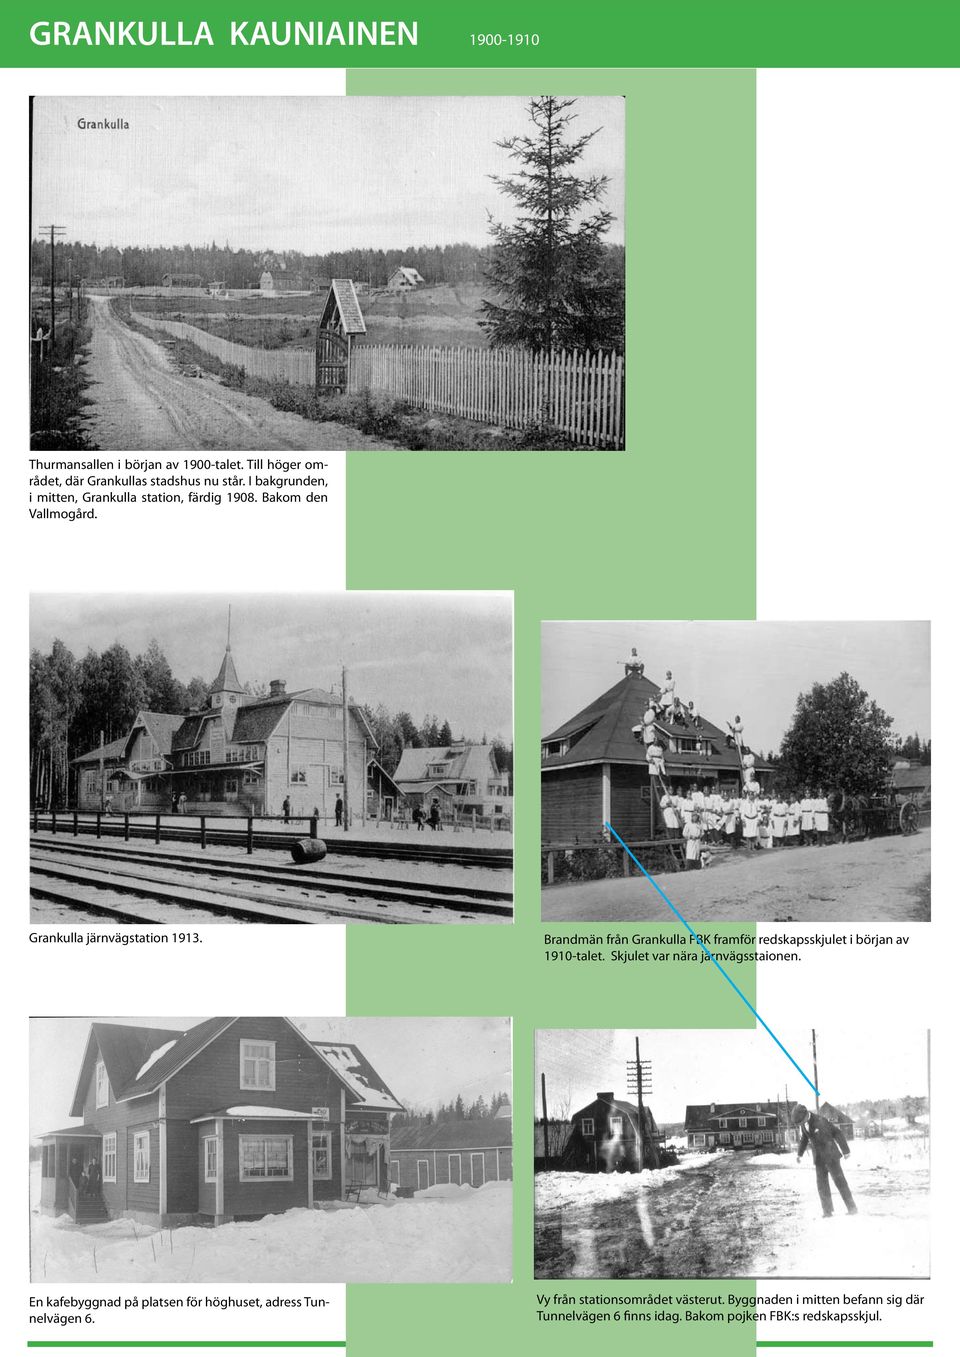 Grankulla järnvägstation 1913. Brandmän från Grankulla FBK framför redskapsskjulet i början av 1910-talet. Skjulet var nära järnvägsstaionen.